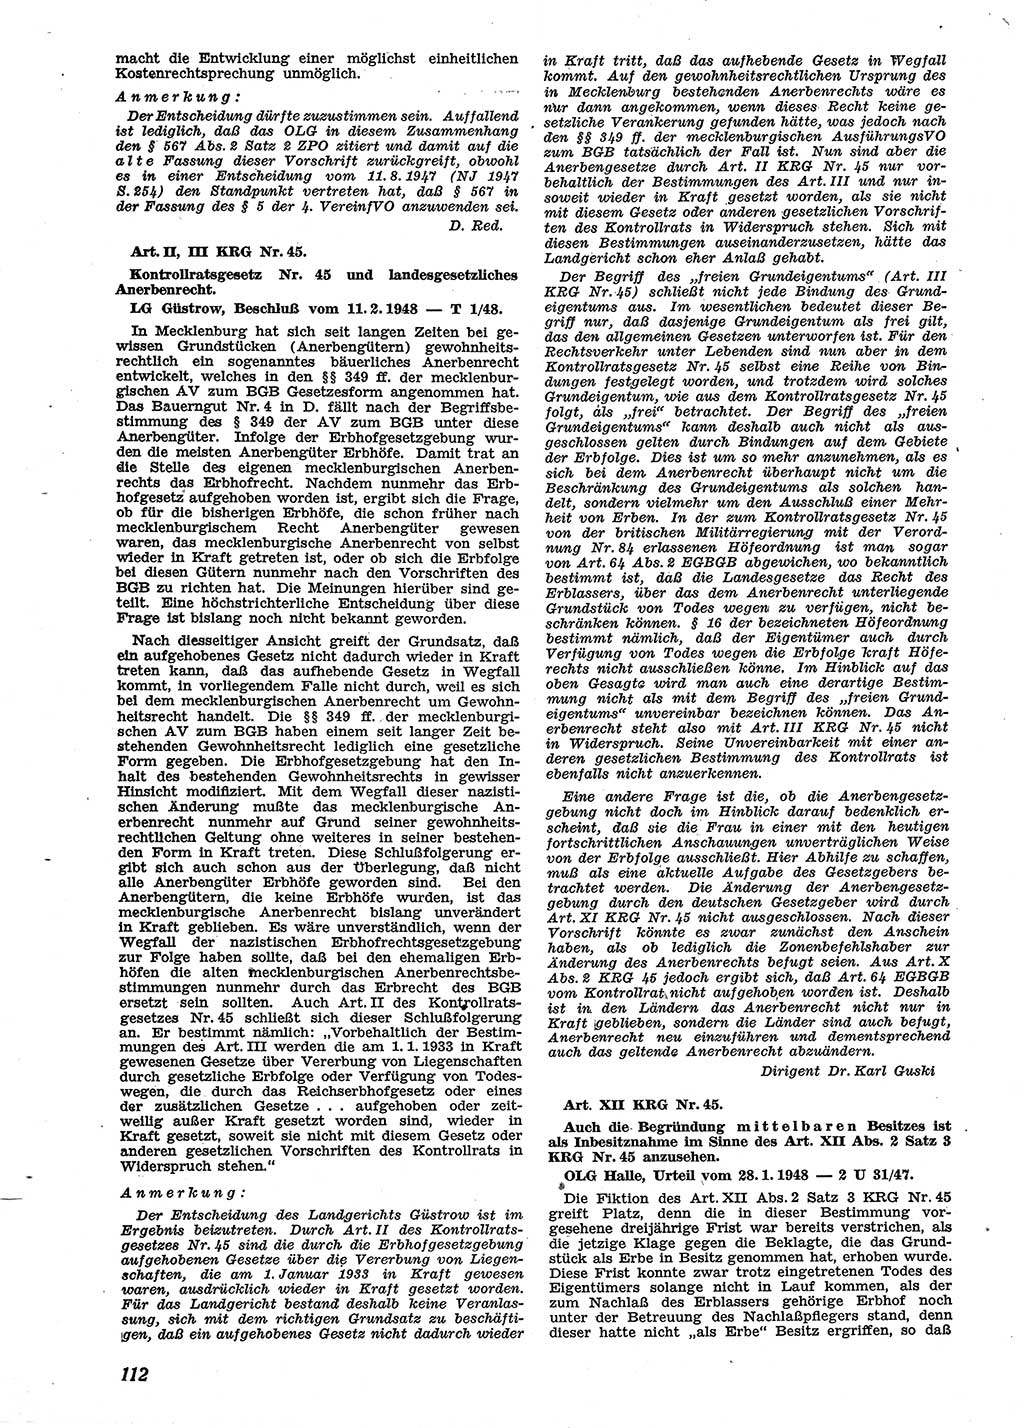 Neue Justiz (NJ), Zeitschrift für Recht und Rechtswissenschaft [Sowjetische Besatzungszone (SBZ) Deutschland], 2. Jahrgang 1948, Seite 112 (NJ SBZ Dtl. 1948, S. 112)